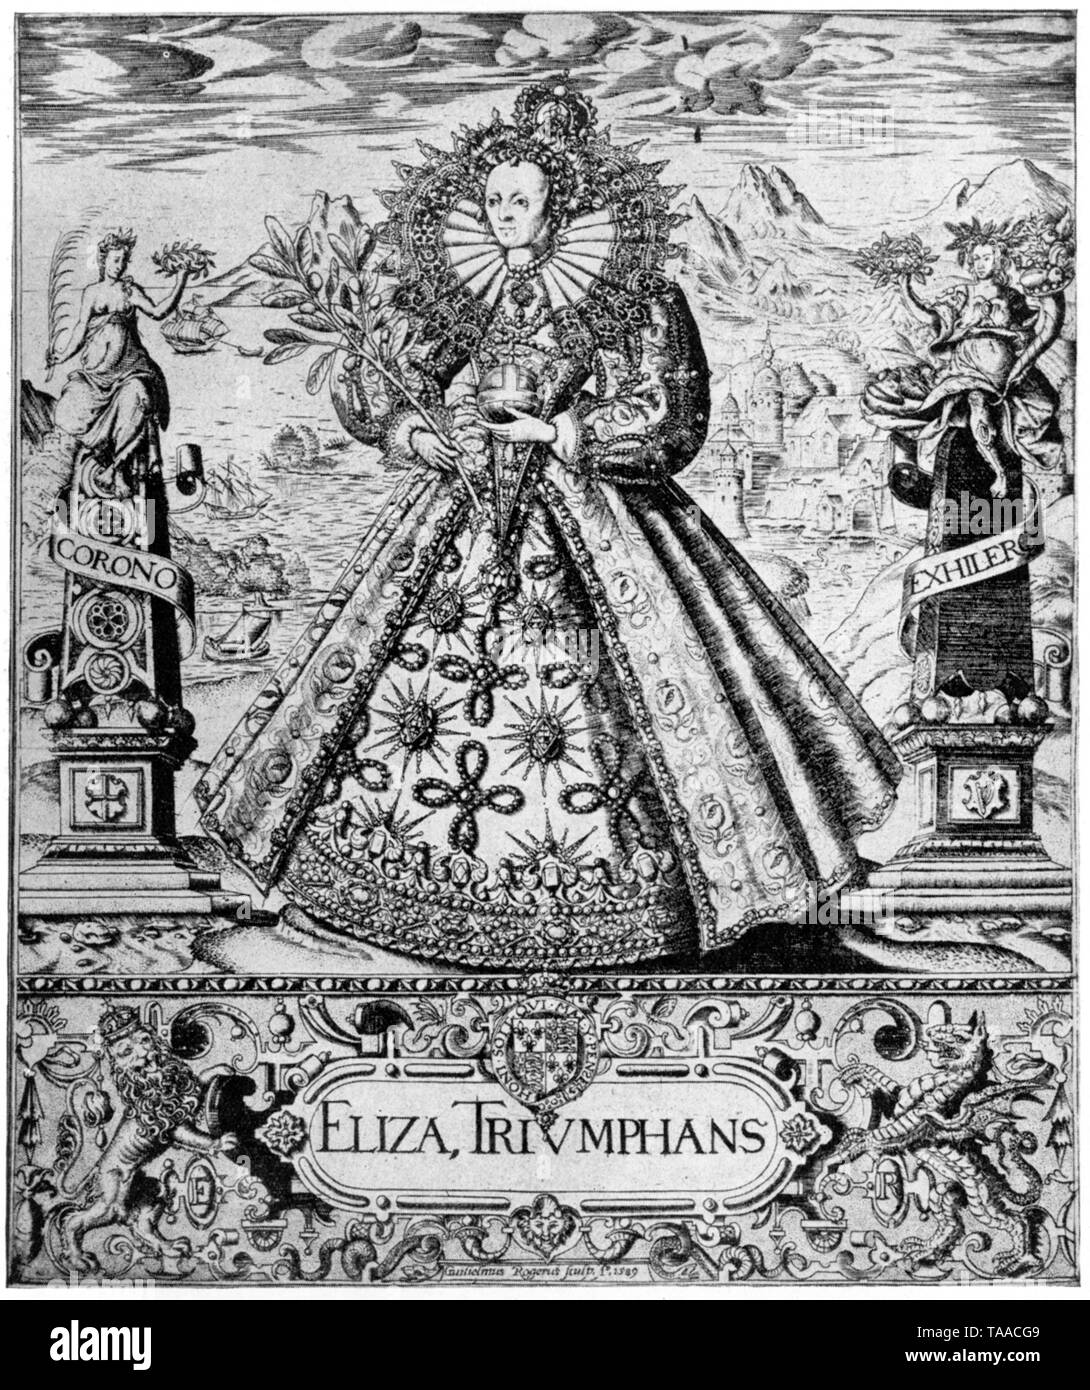 Elizabeth Triunfante (Eliza Triumphans), c1589. Por William Rogers (c1545-c1604). Este primer grabado de cobre celebra la victoria de Elizabeth I sobre la Armada Española. Ella está triunfante rodeada de emblemas de victoria y paz, frente a un paisaje marino que simboliza la dominación británica del mar. Foto de stock